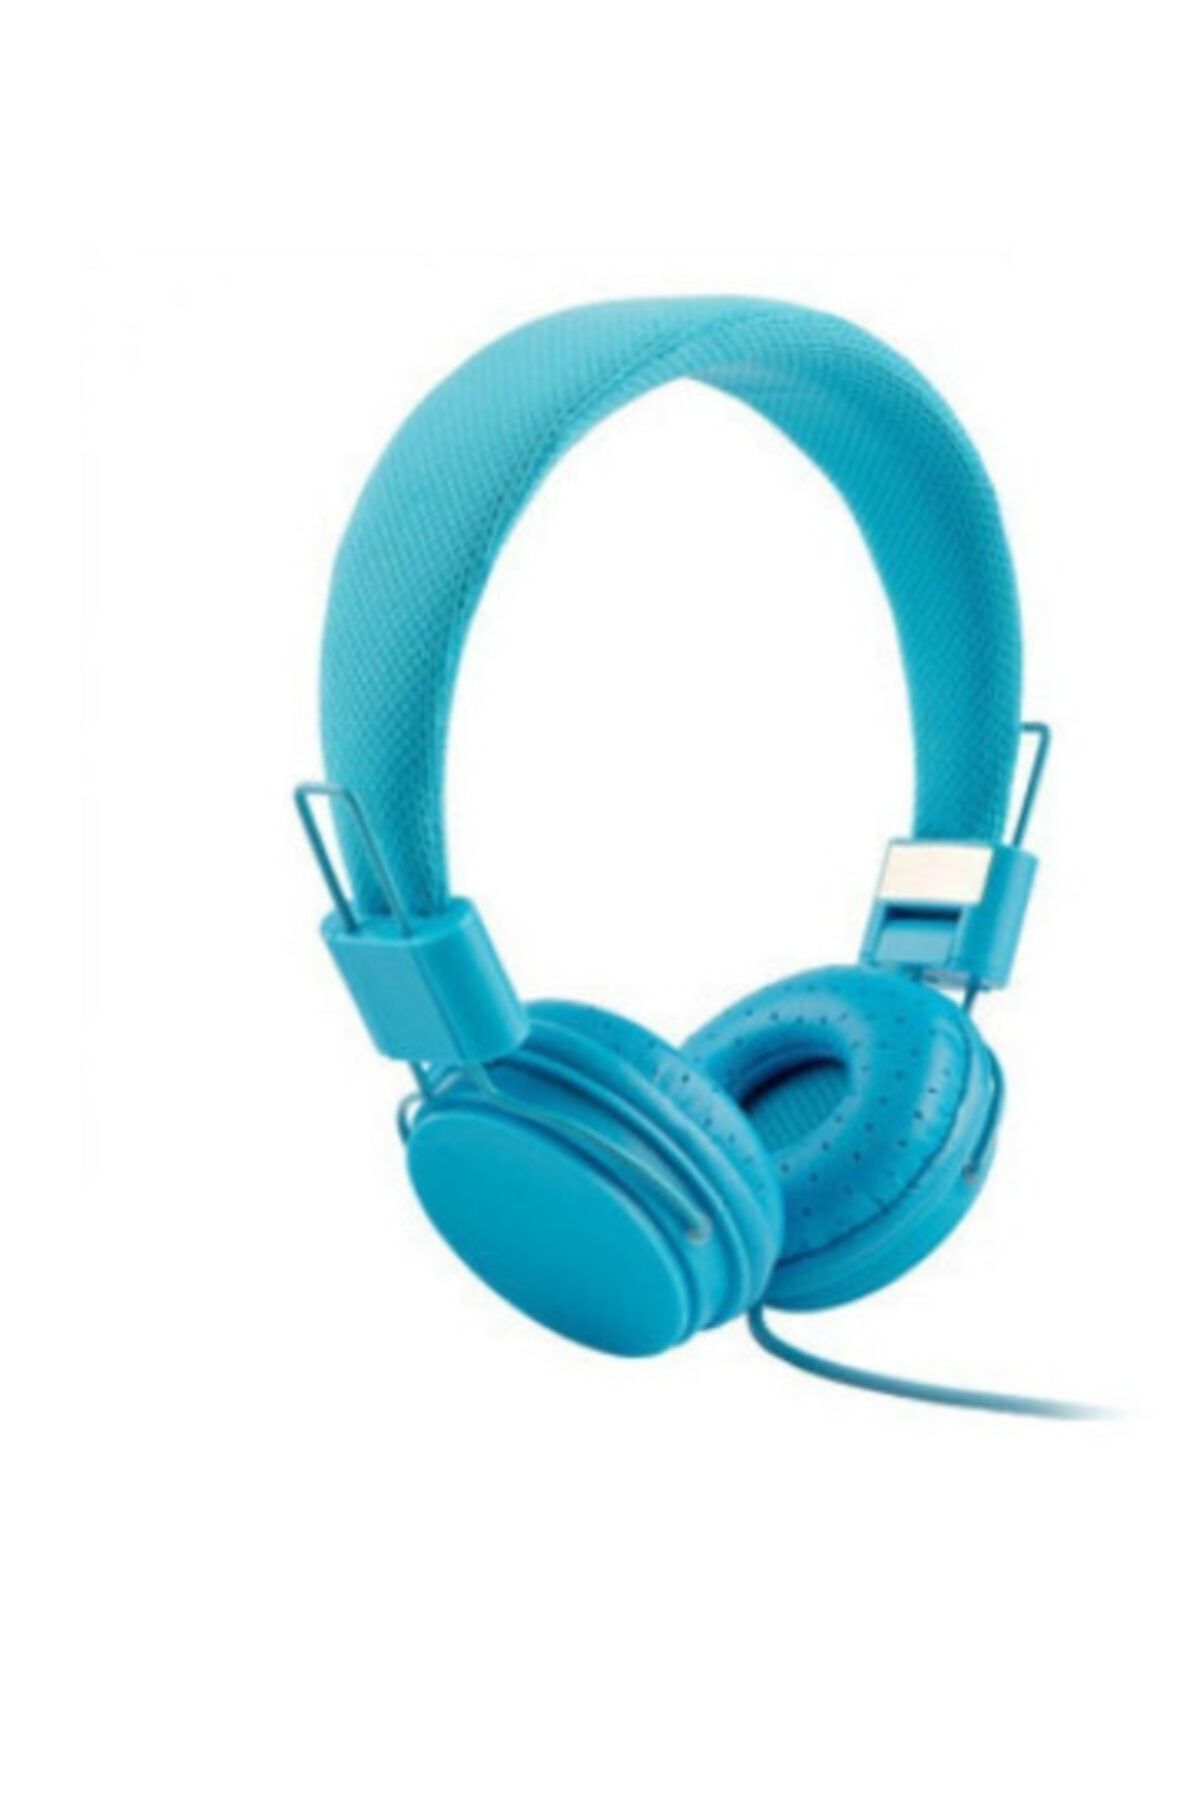 Kakusan Kafa Bantlı Color Kulaklık Mikrofonlu Kablolu Katlana Bilir Kulaklık Mavi